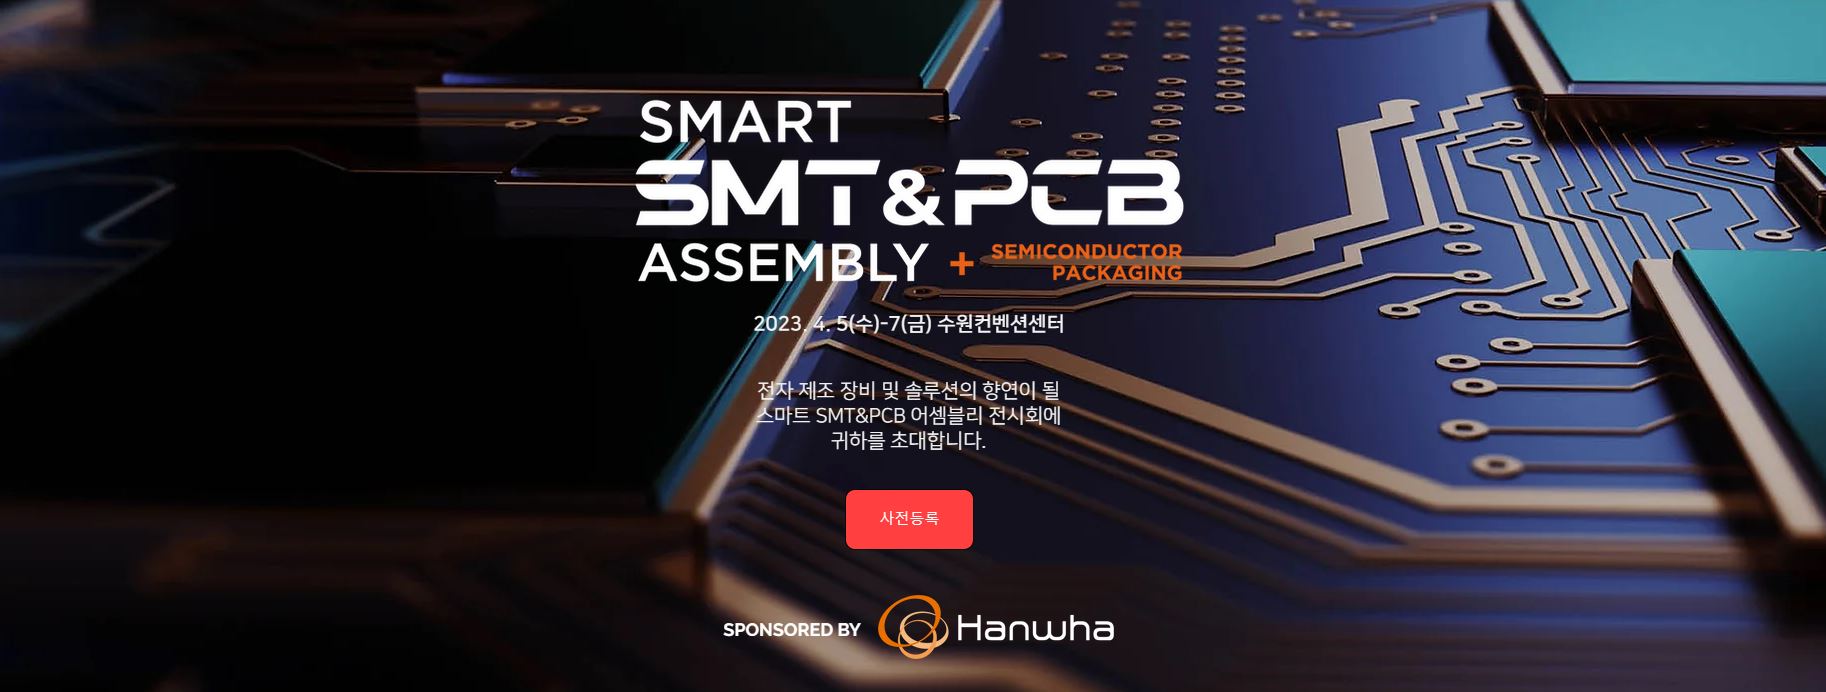 파멕스, 2023년 4월 5일 ~ 4월 7일 SMART SMT & PCB ASSEMBLY 전시회 참가